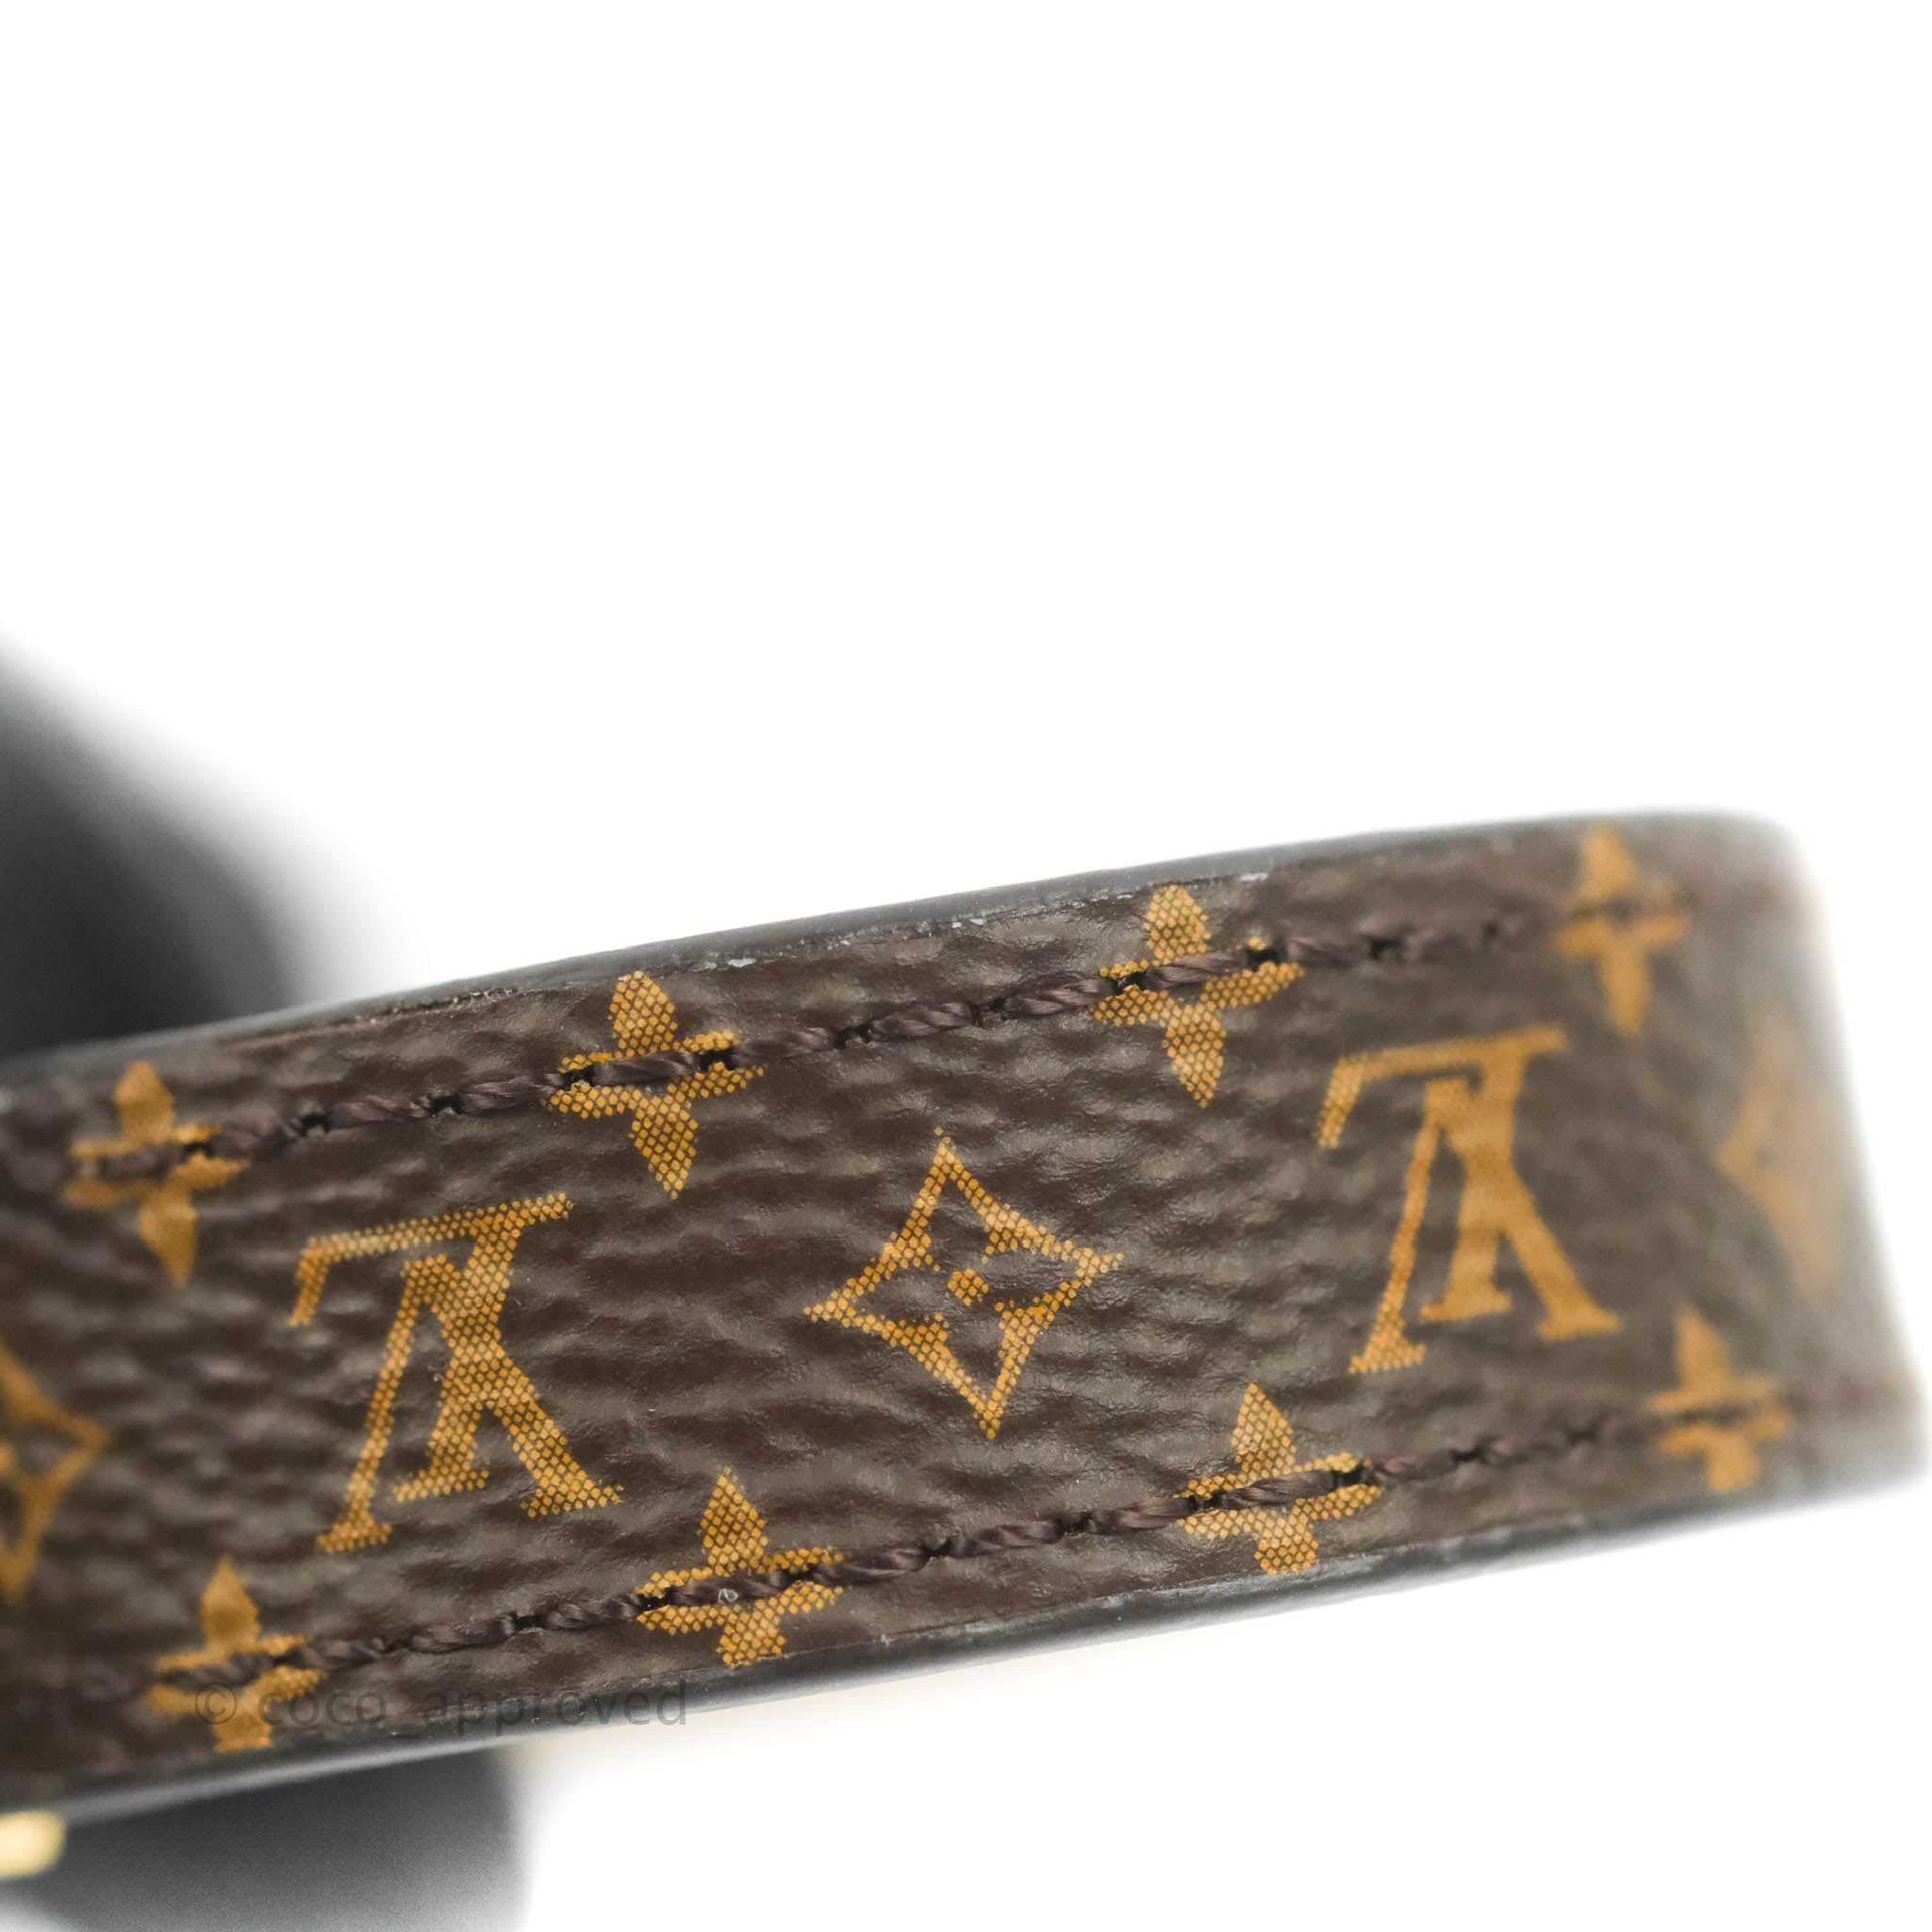 Louis Vuitton Twist Bracelet Black – Coco Approved Studio